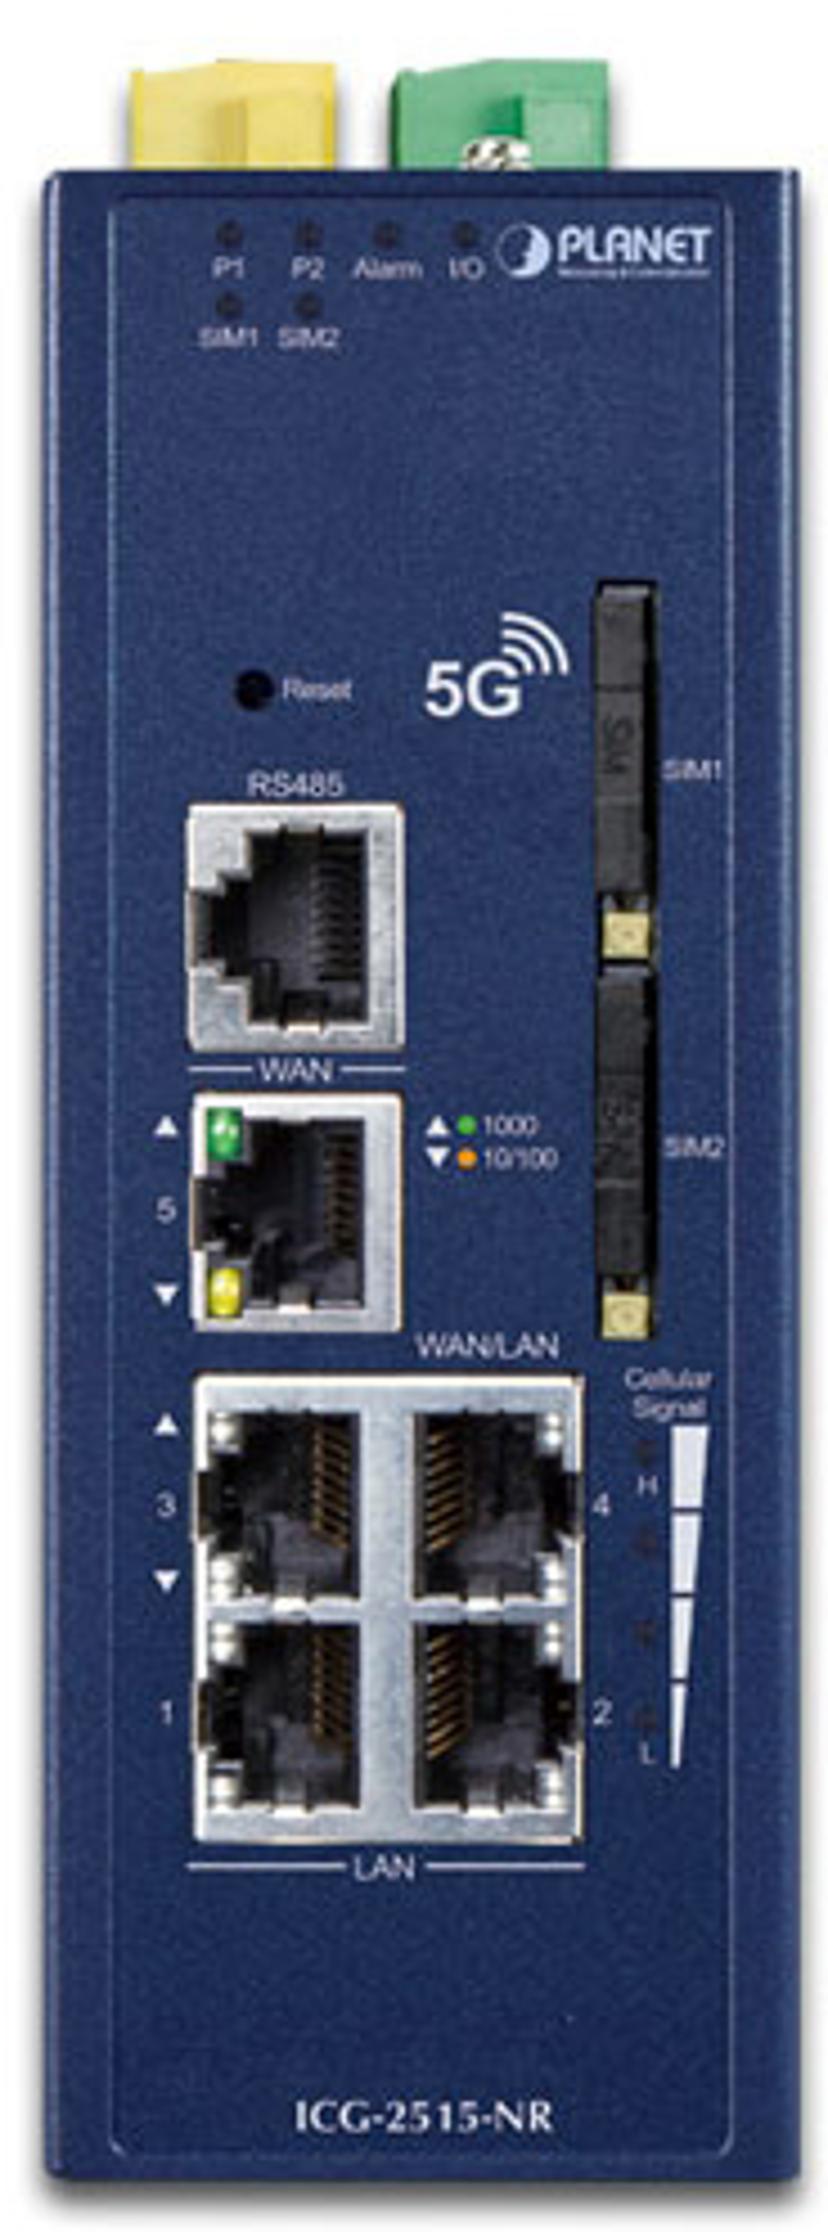 Digitus CG-2515-NR 5G Cellular Gateway